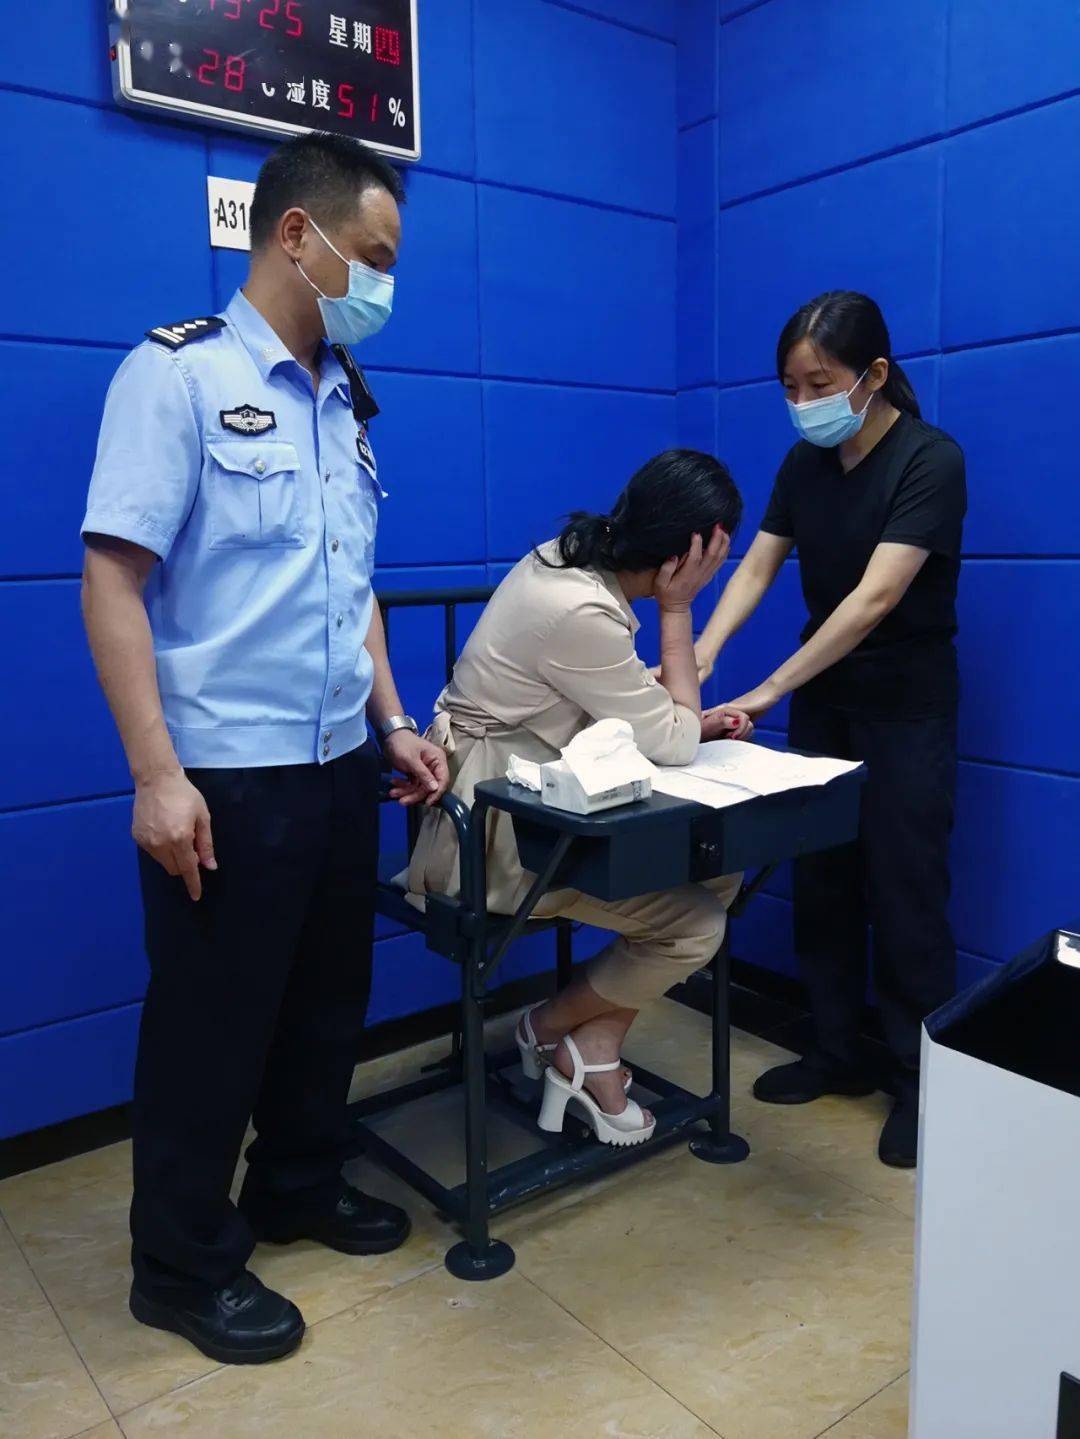 不服从疫情管控,还推搡医护人员,广州一女子被拘留九天